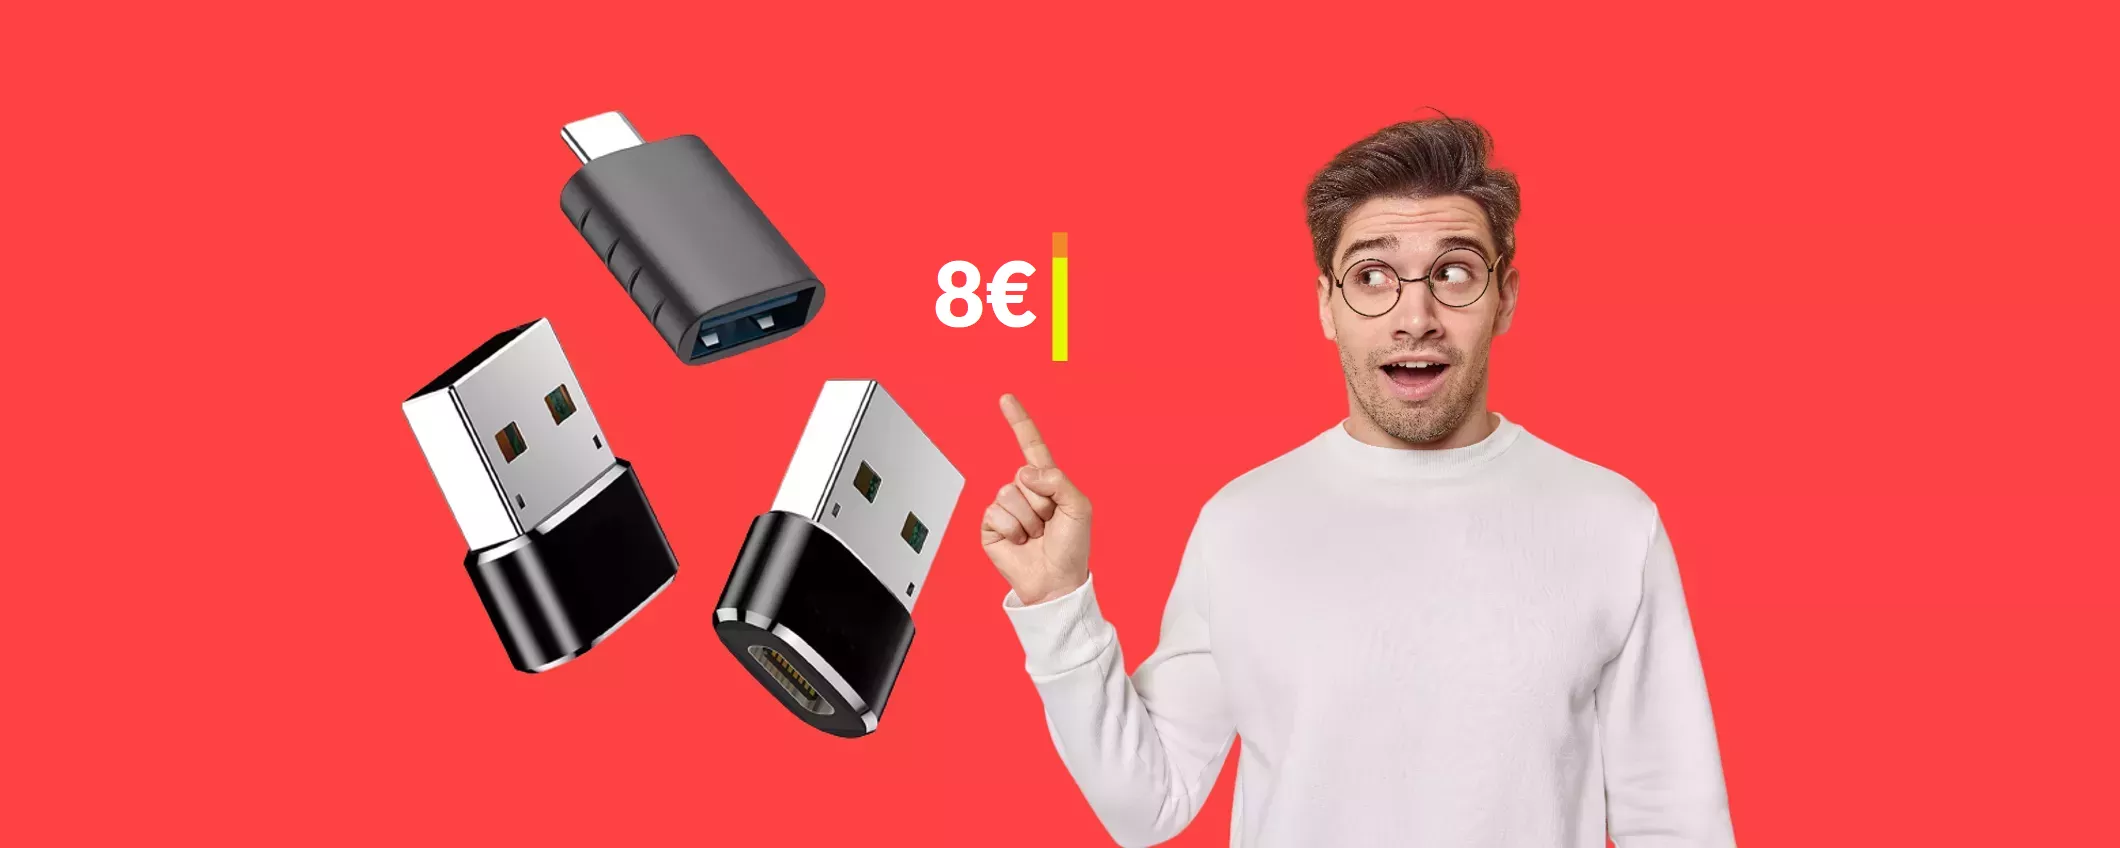 Con appena 8€ prendi un TRIS di adattatori USB indispensabili